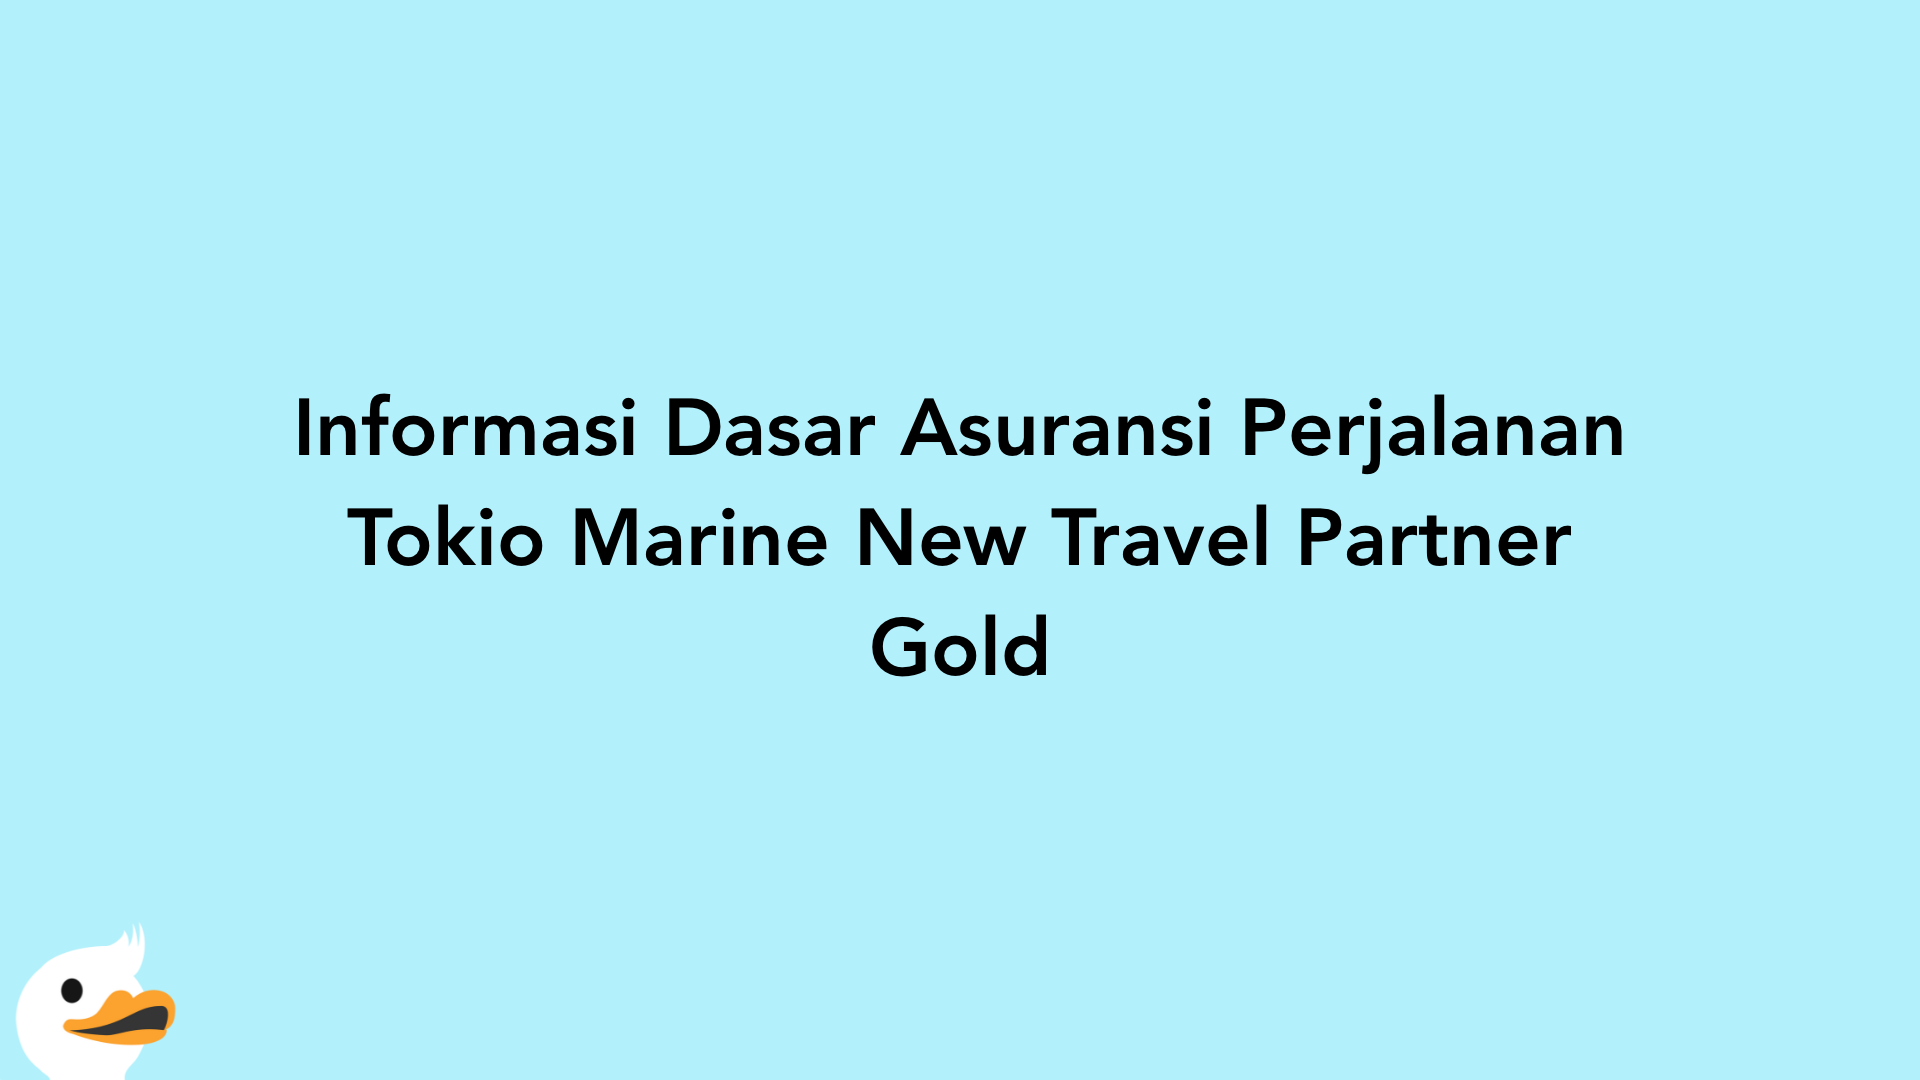 Informasi Dasar Asuransi Perjalanan Tokio Marine New Travel Partner Gold